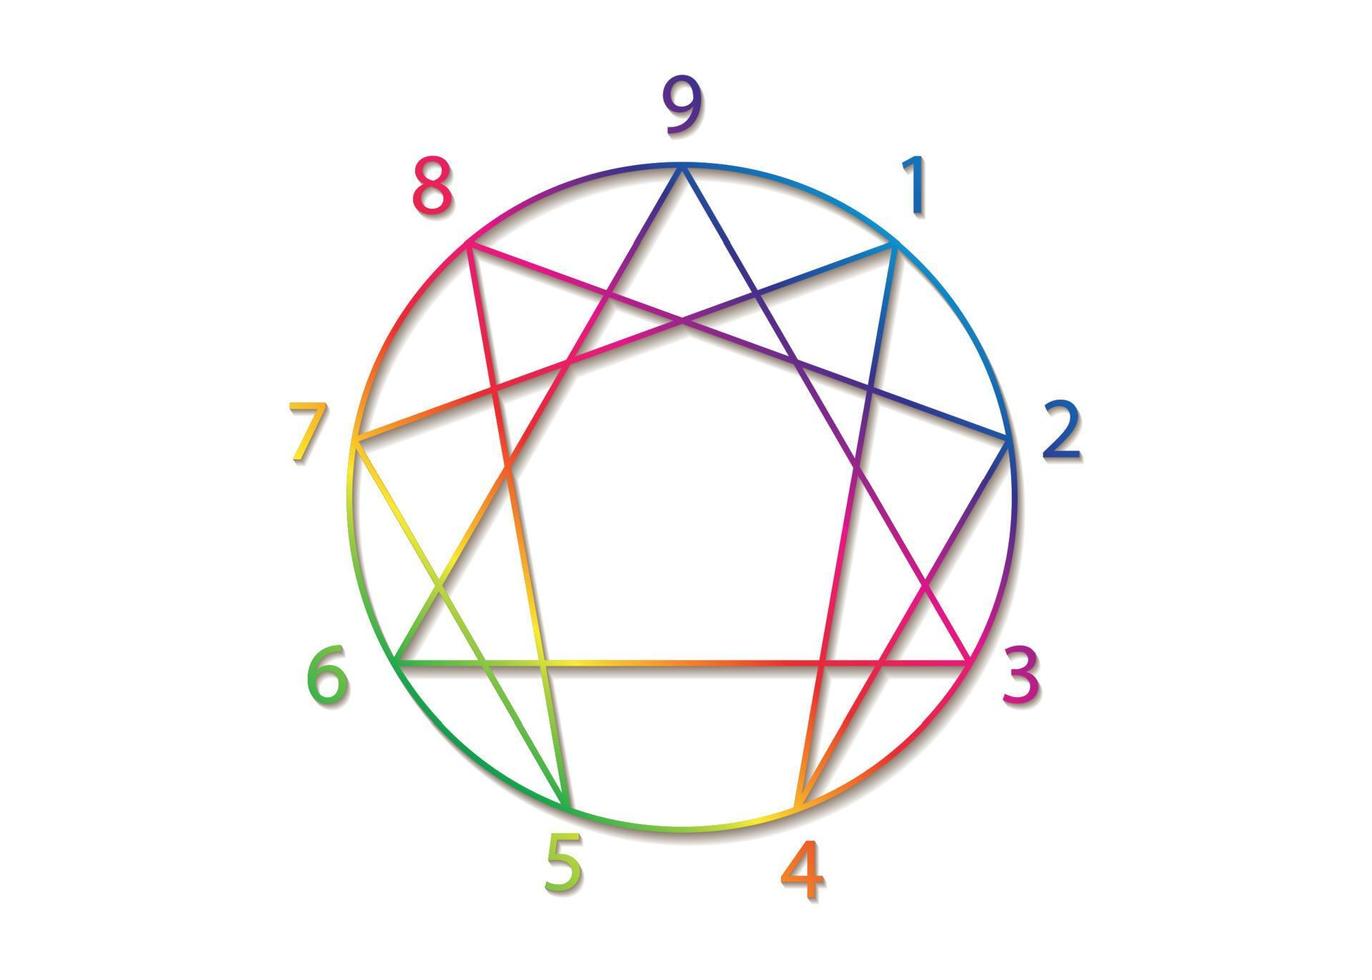 Enneagramm-Symbol, heilige Geometrie, bunte Farbverlaufslogoschablone des Diagramms, mit Zahlen von eins bis neun bezüglich der neun Persönlichkeitstypen, Vektorillustration einzeln auf weißem Hintergrund vektor